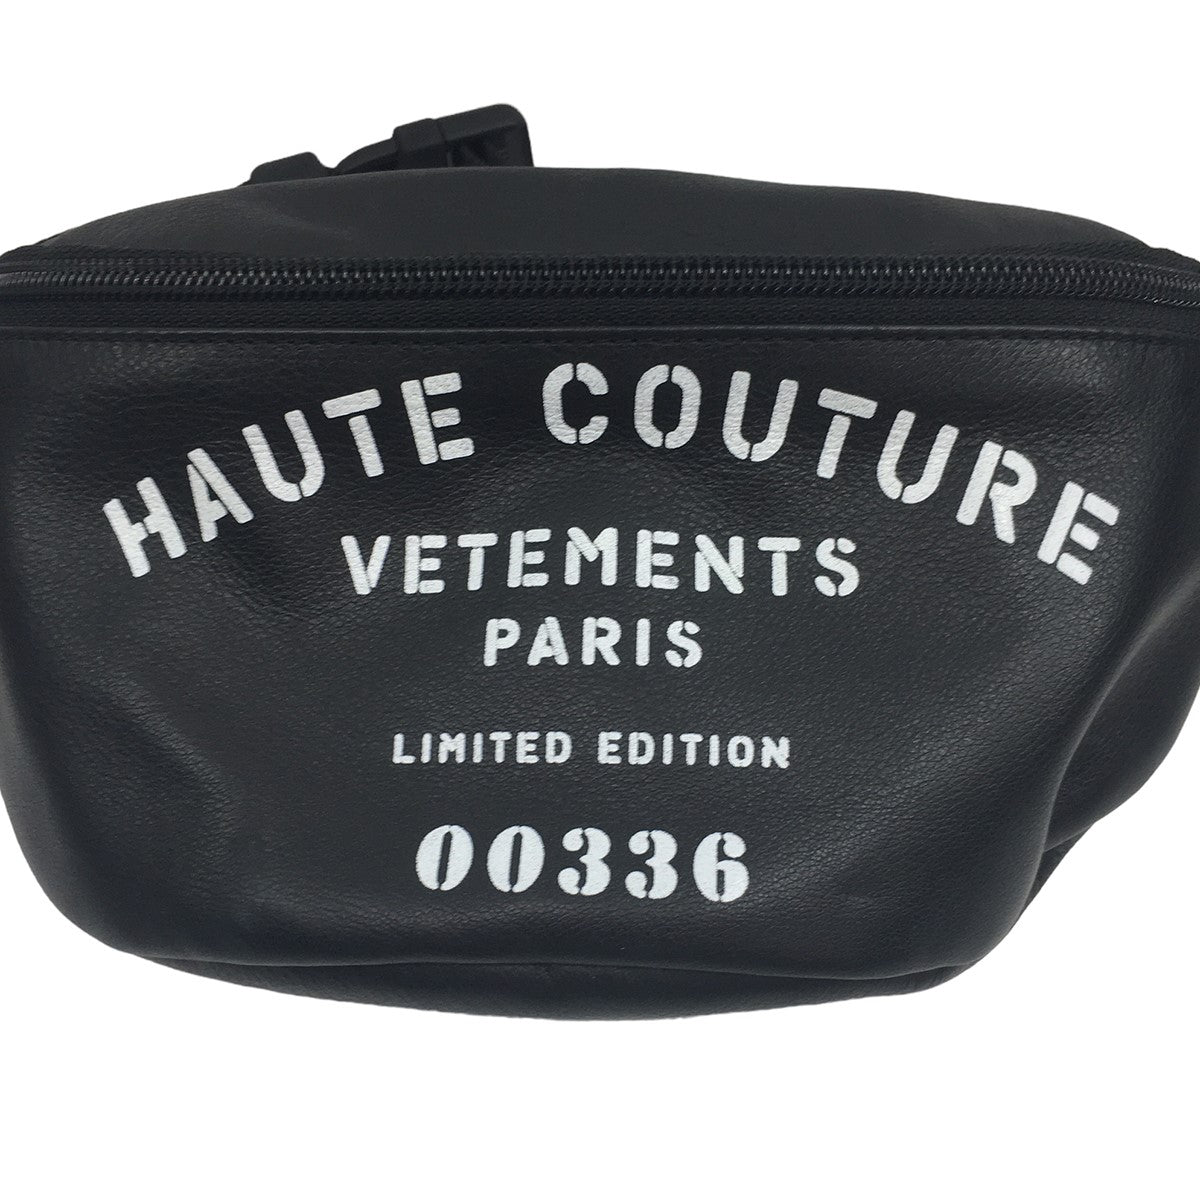 VETEMENTS(ヴェトモン) HAUTE COUTURE ロゴ オートクチュール レザー ボディバッグ ショルダー バッグ